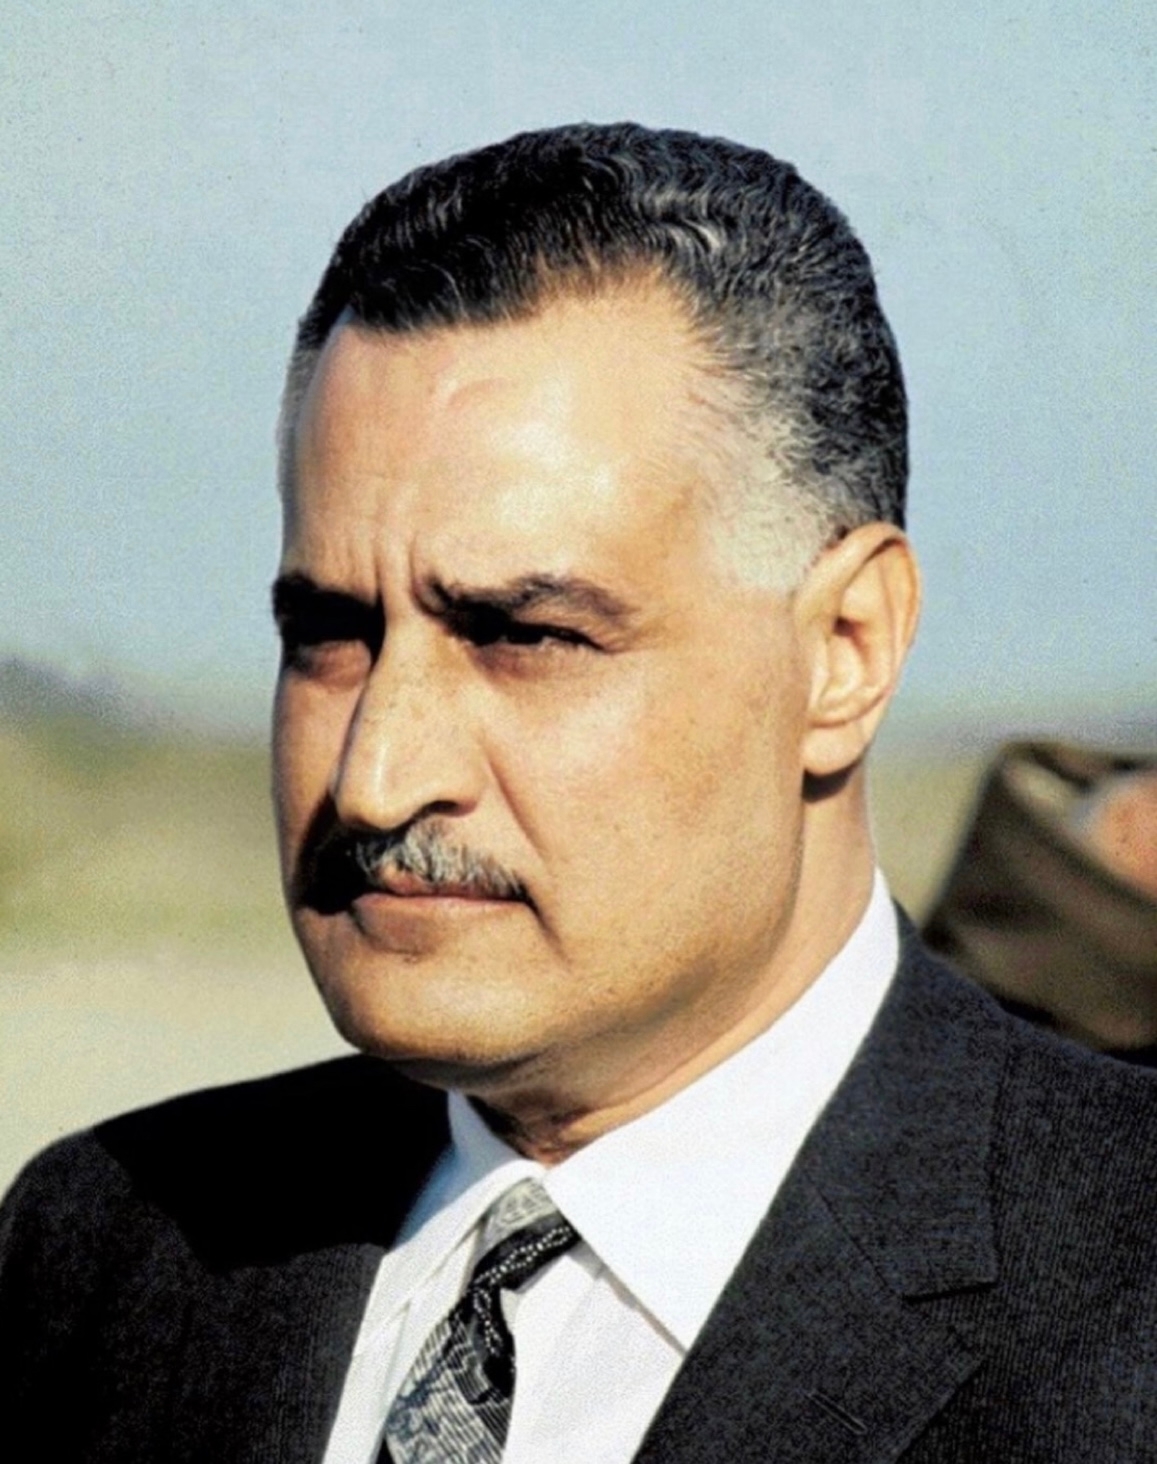 auteur Gamal Abdel Nasser de la citation Dans le cercle arabe, il y a un rôle errant sans but à la recherche d'un héros. Pour une raison quelconque, il me semble que ce rôle vous invite à nous déplacer, à reprendre ses lignes, à mettre ses costumes et à lui donner vie. En effet, nous sommes les seuls à pouvoir y jouer. Le rôle est de déclencher les forces latentes énormes de la région qui nous entoure pour créer une grande puissance, qui s'élèvera ensuite à un niveau de dignité et entreprendra une partie positive dans la construction de l'avenir de l'humanité.